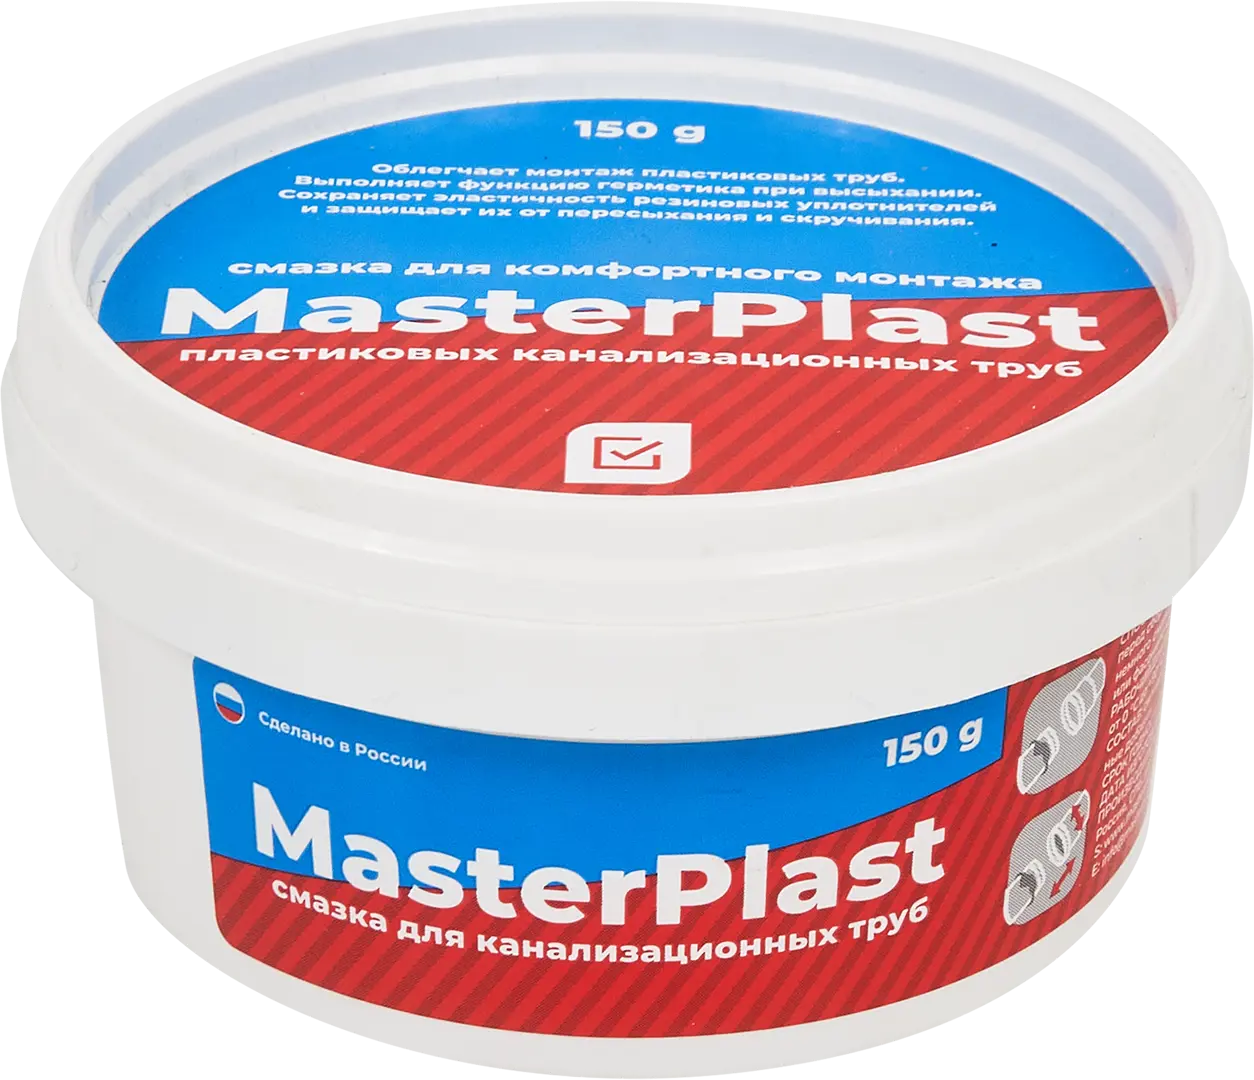 Смазка для канализационных труб Masterplast 150 г смазка для канализационных труб masterplast 70 г